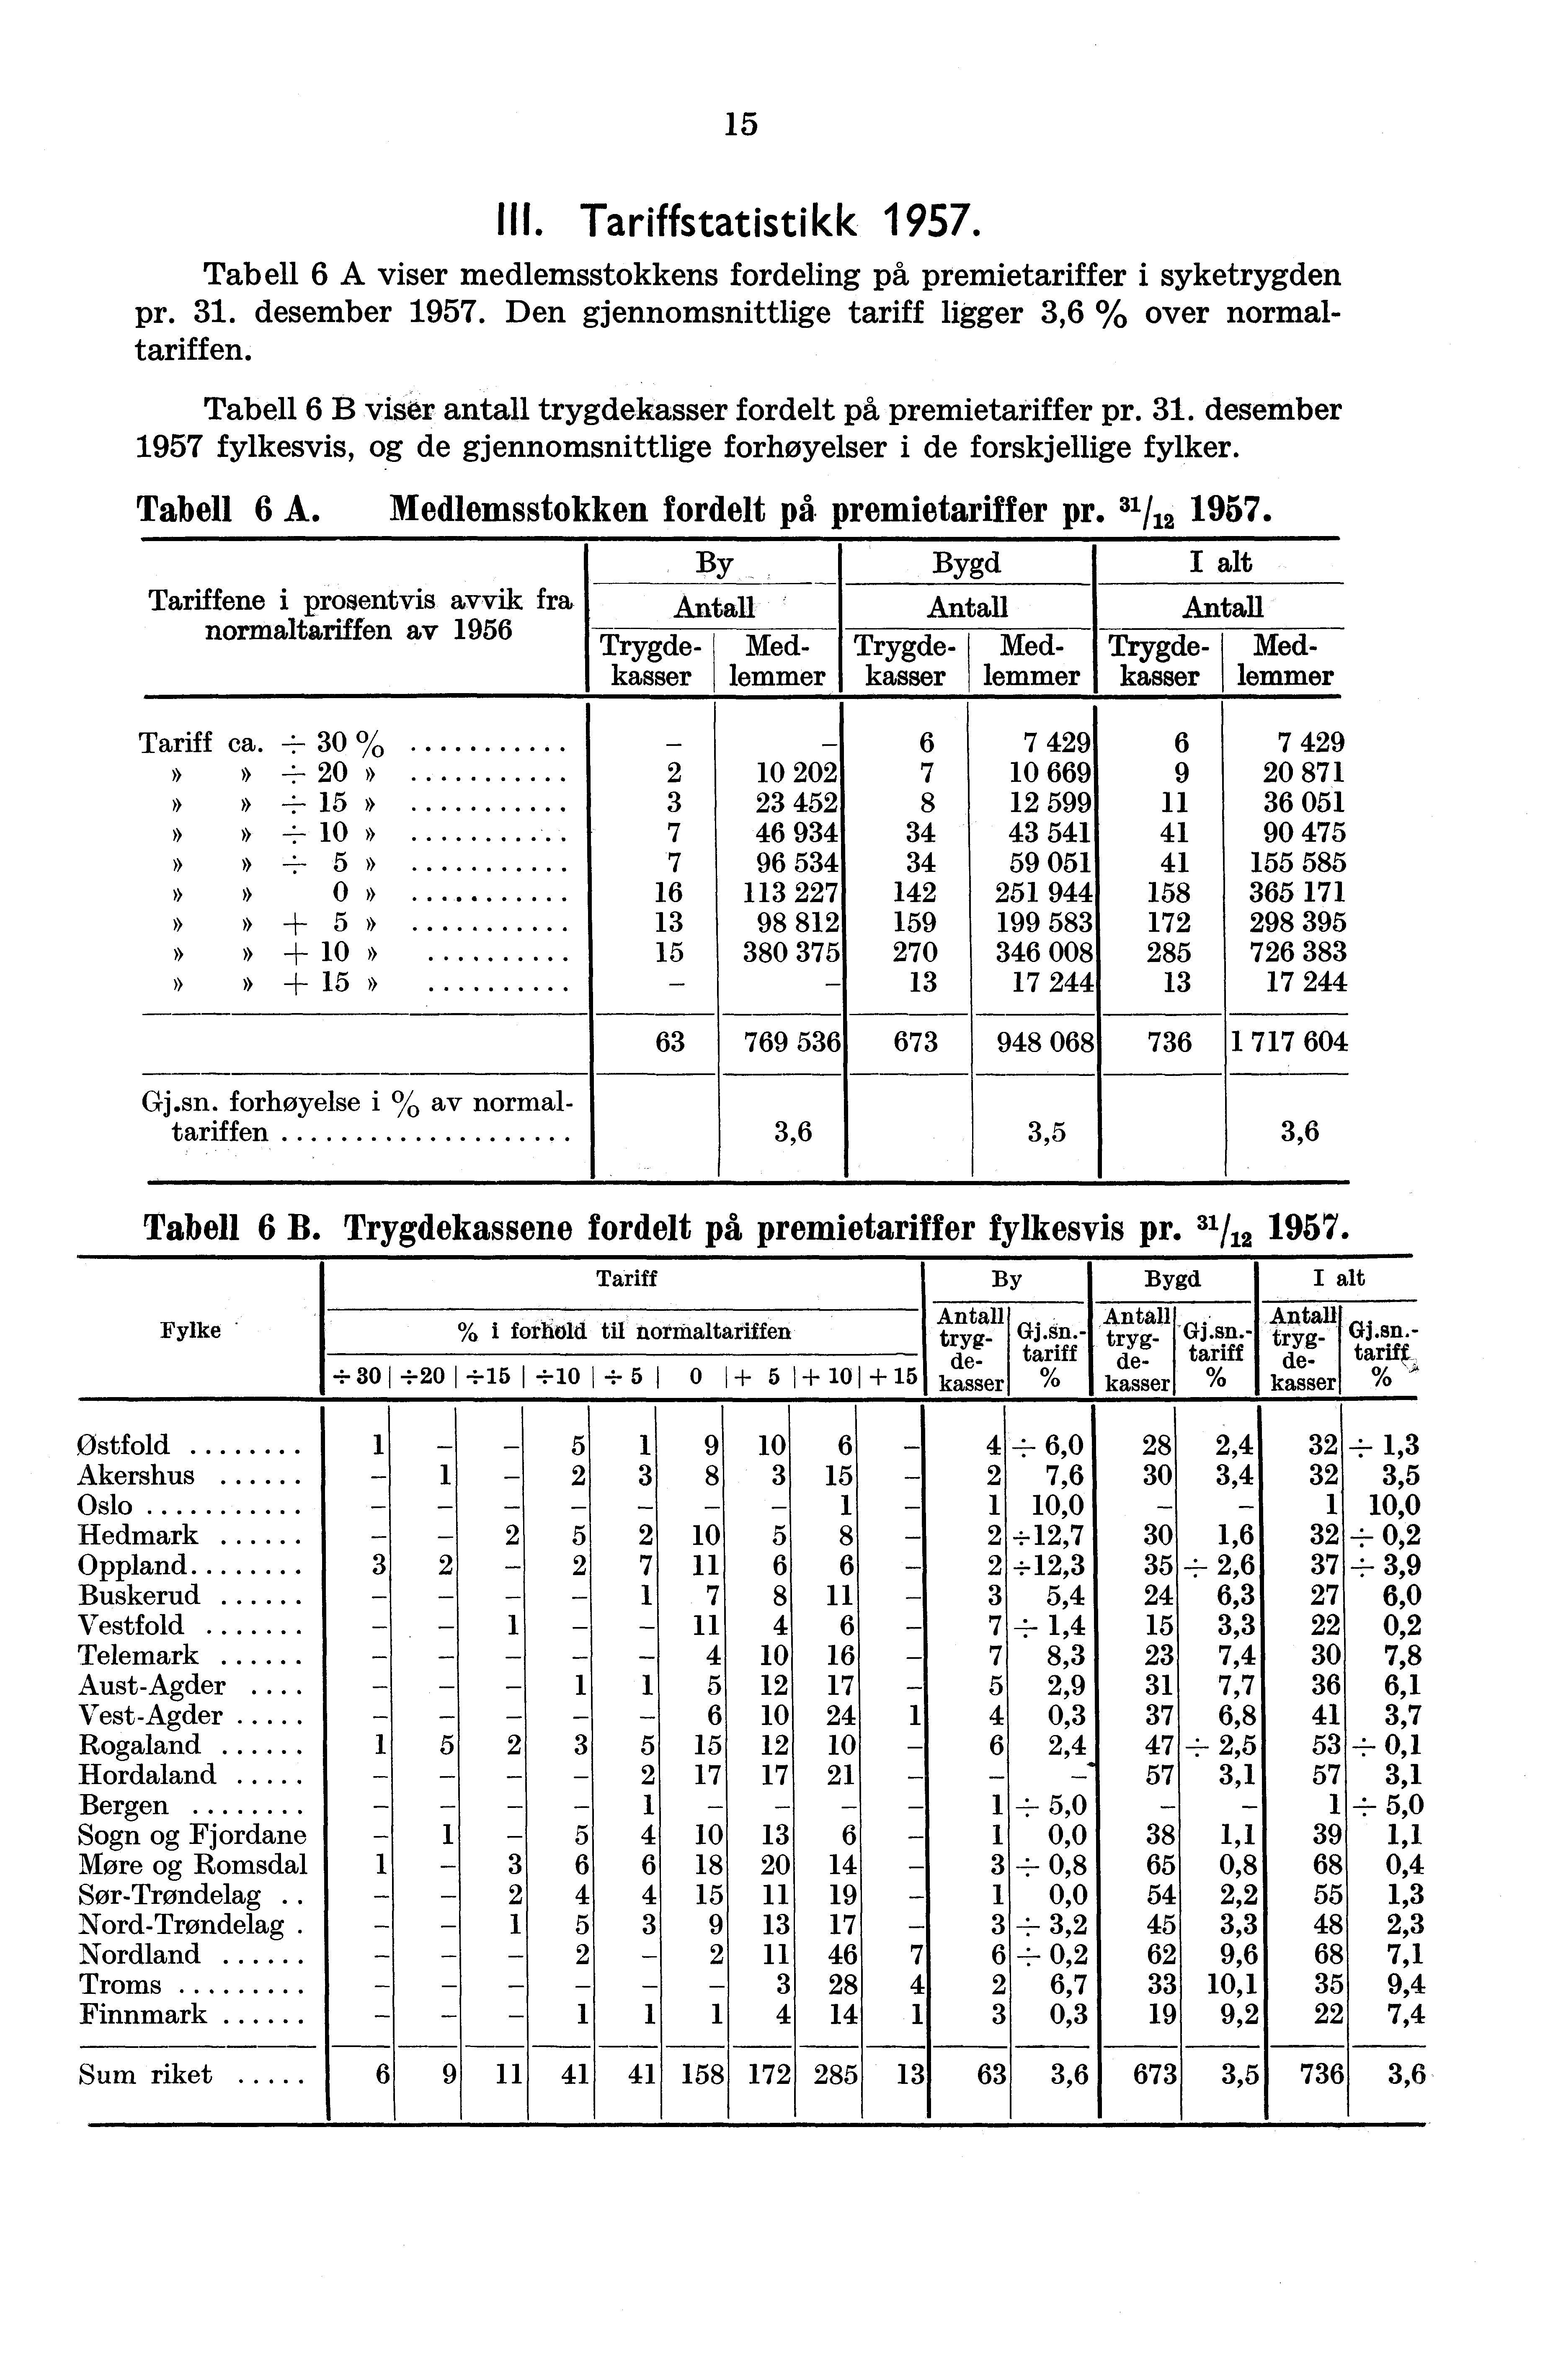 15 Tabell 6 B viser antall trygdekasser fordelt på premietariffer pr 31 desember 1957 fylkesvis, og de gjennomsnittlige forhøyelser i de forskjellige fylker Tabell 6 A Medlemsstokken fordelt på